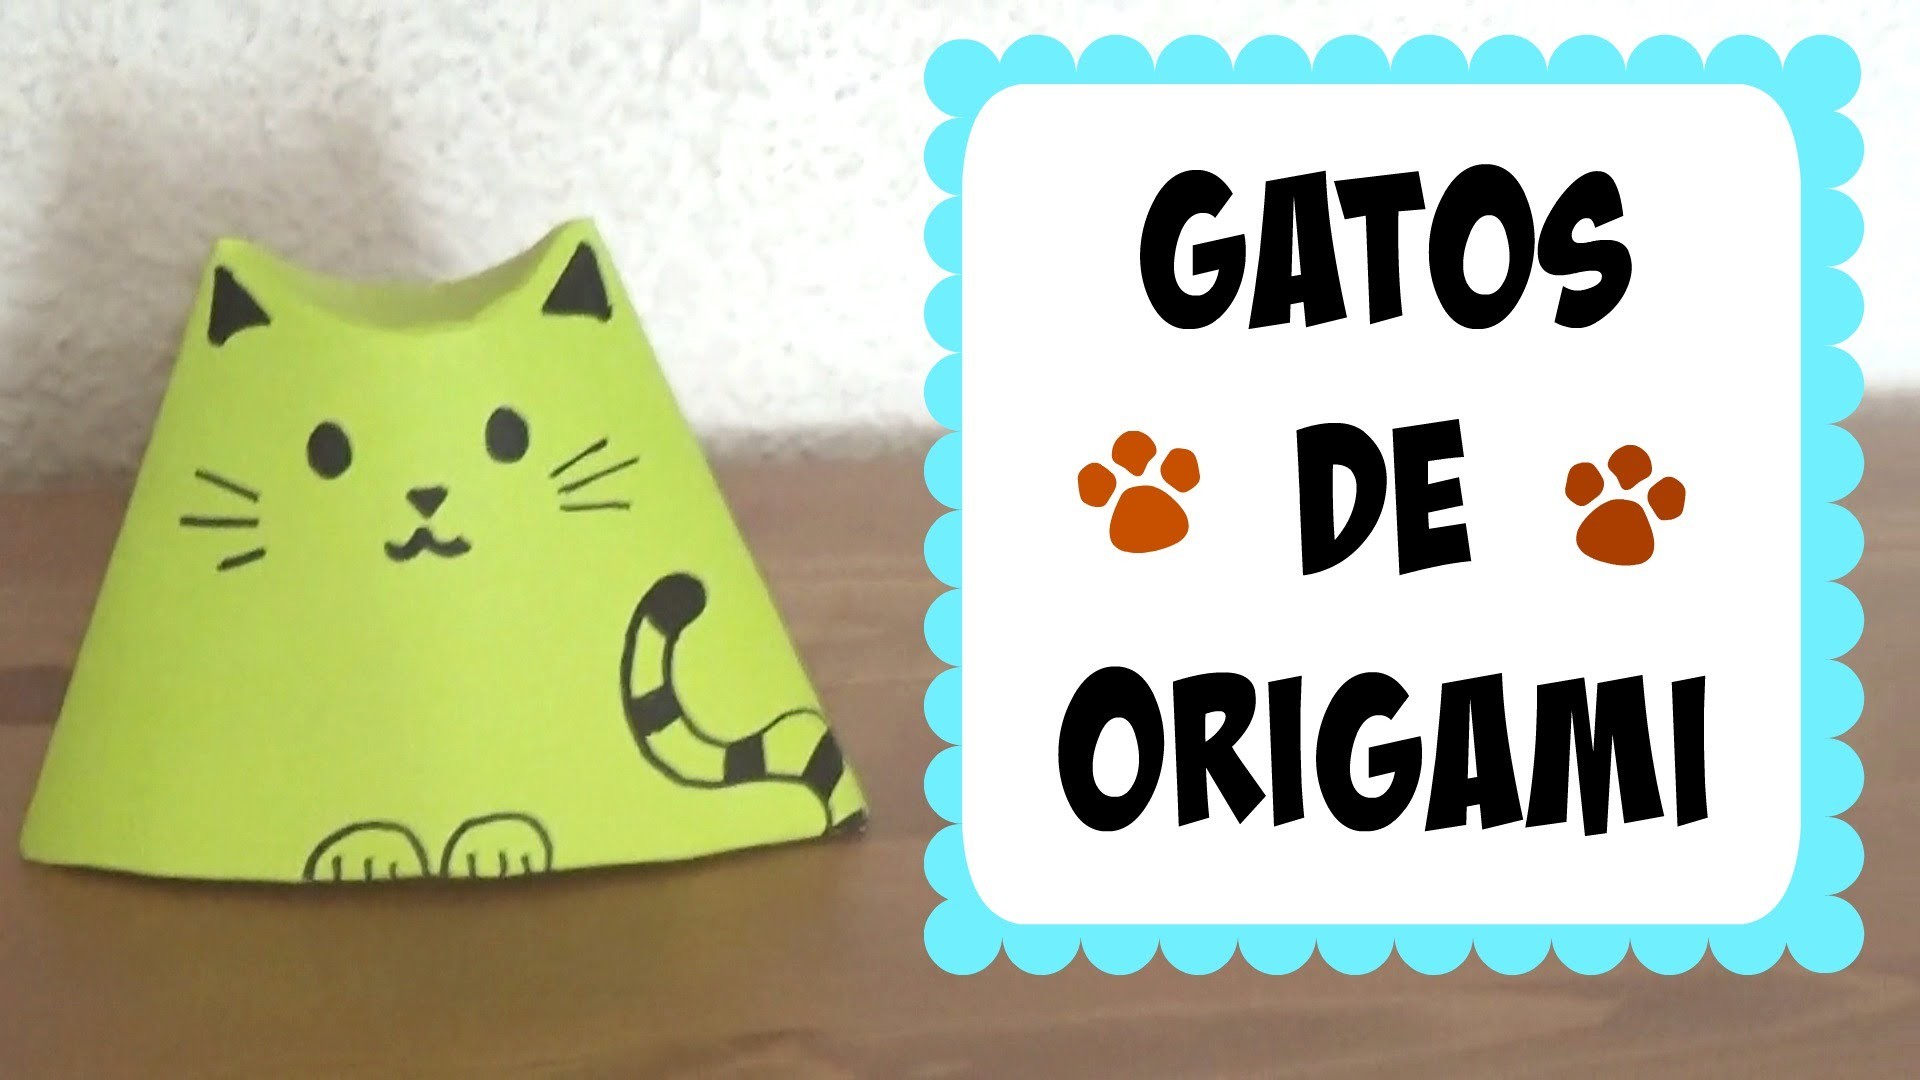 Gatitos de Origami (Fácil y Cute!)